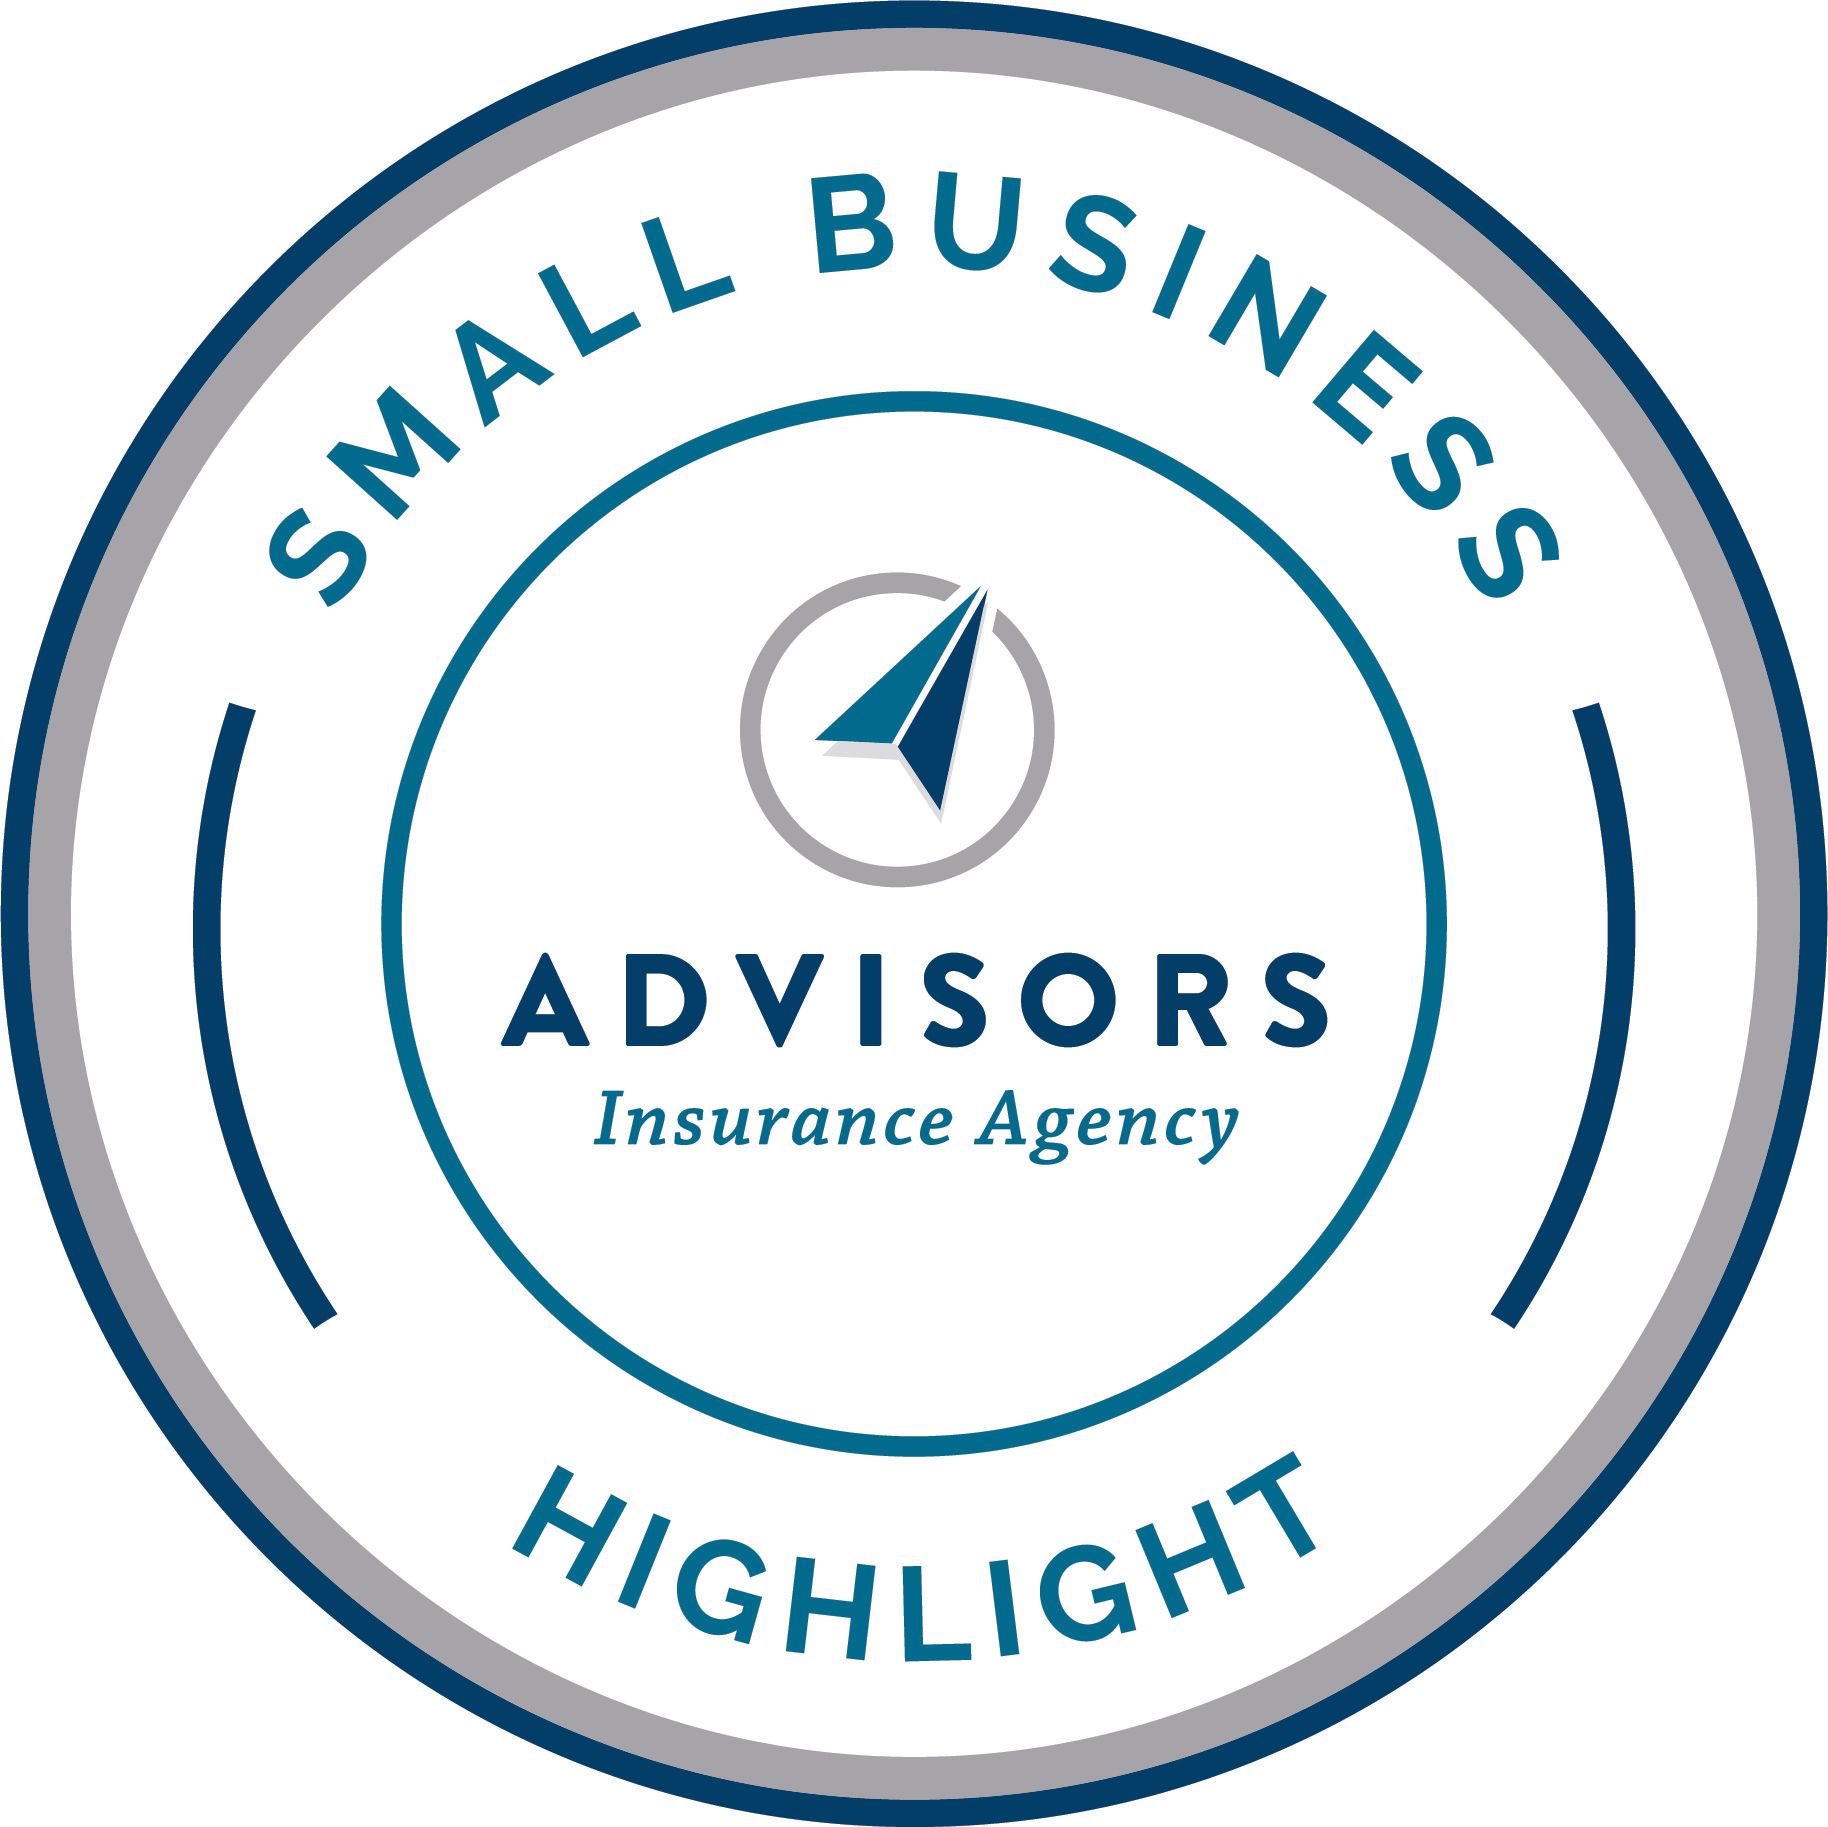 Advisors Insurance Agency Small Business Highlight